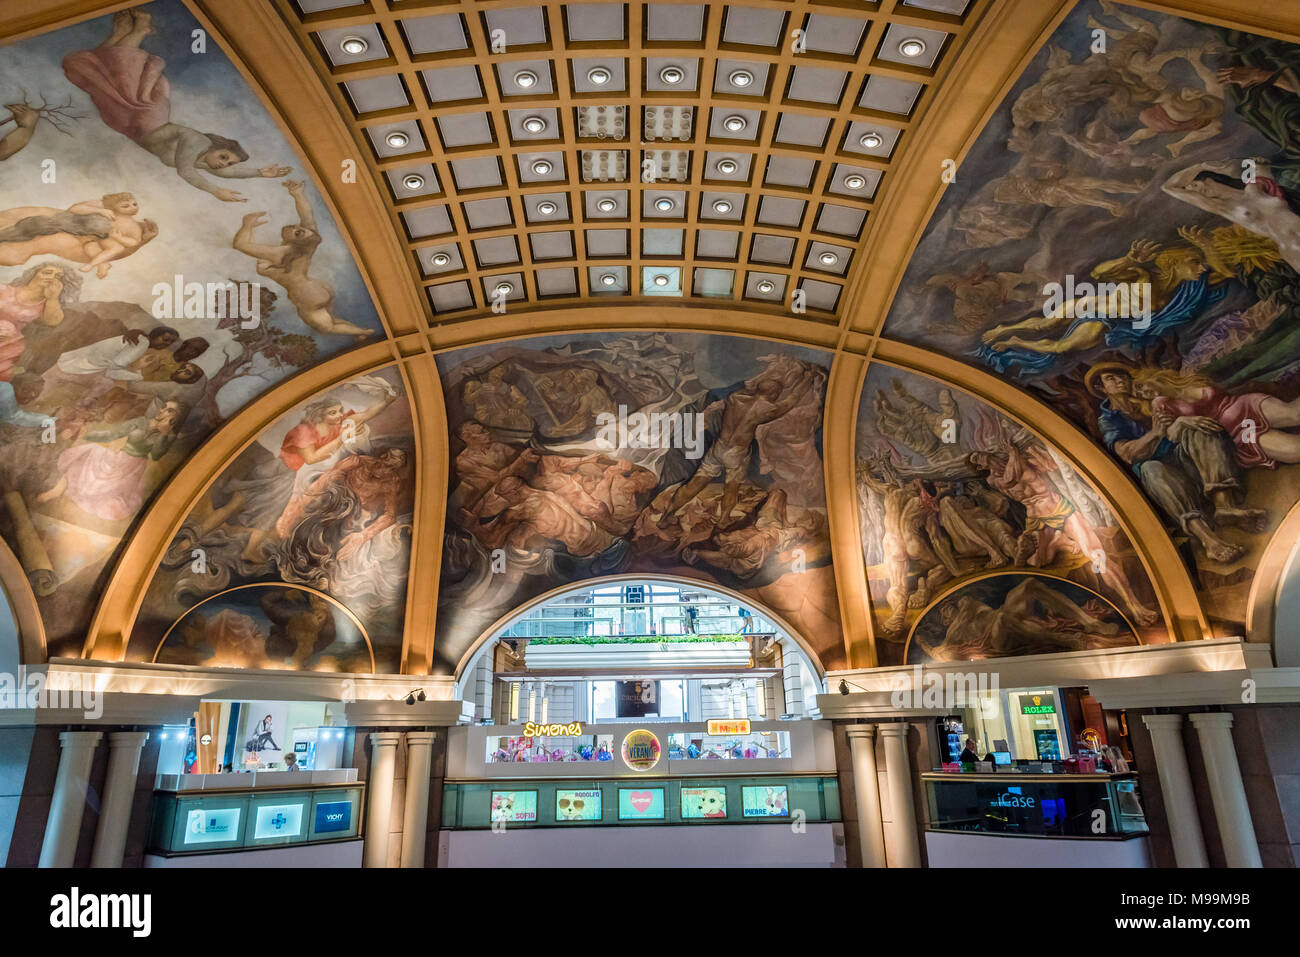 Le plafond peint de Galerias Pacifico, Buenos Aires, Argentine Banque D'Images